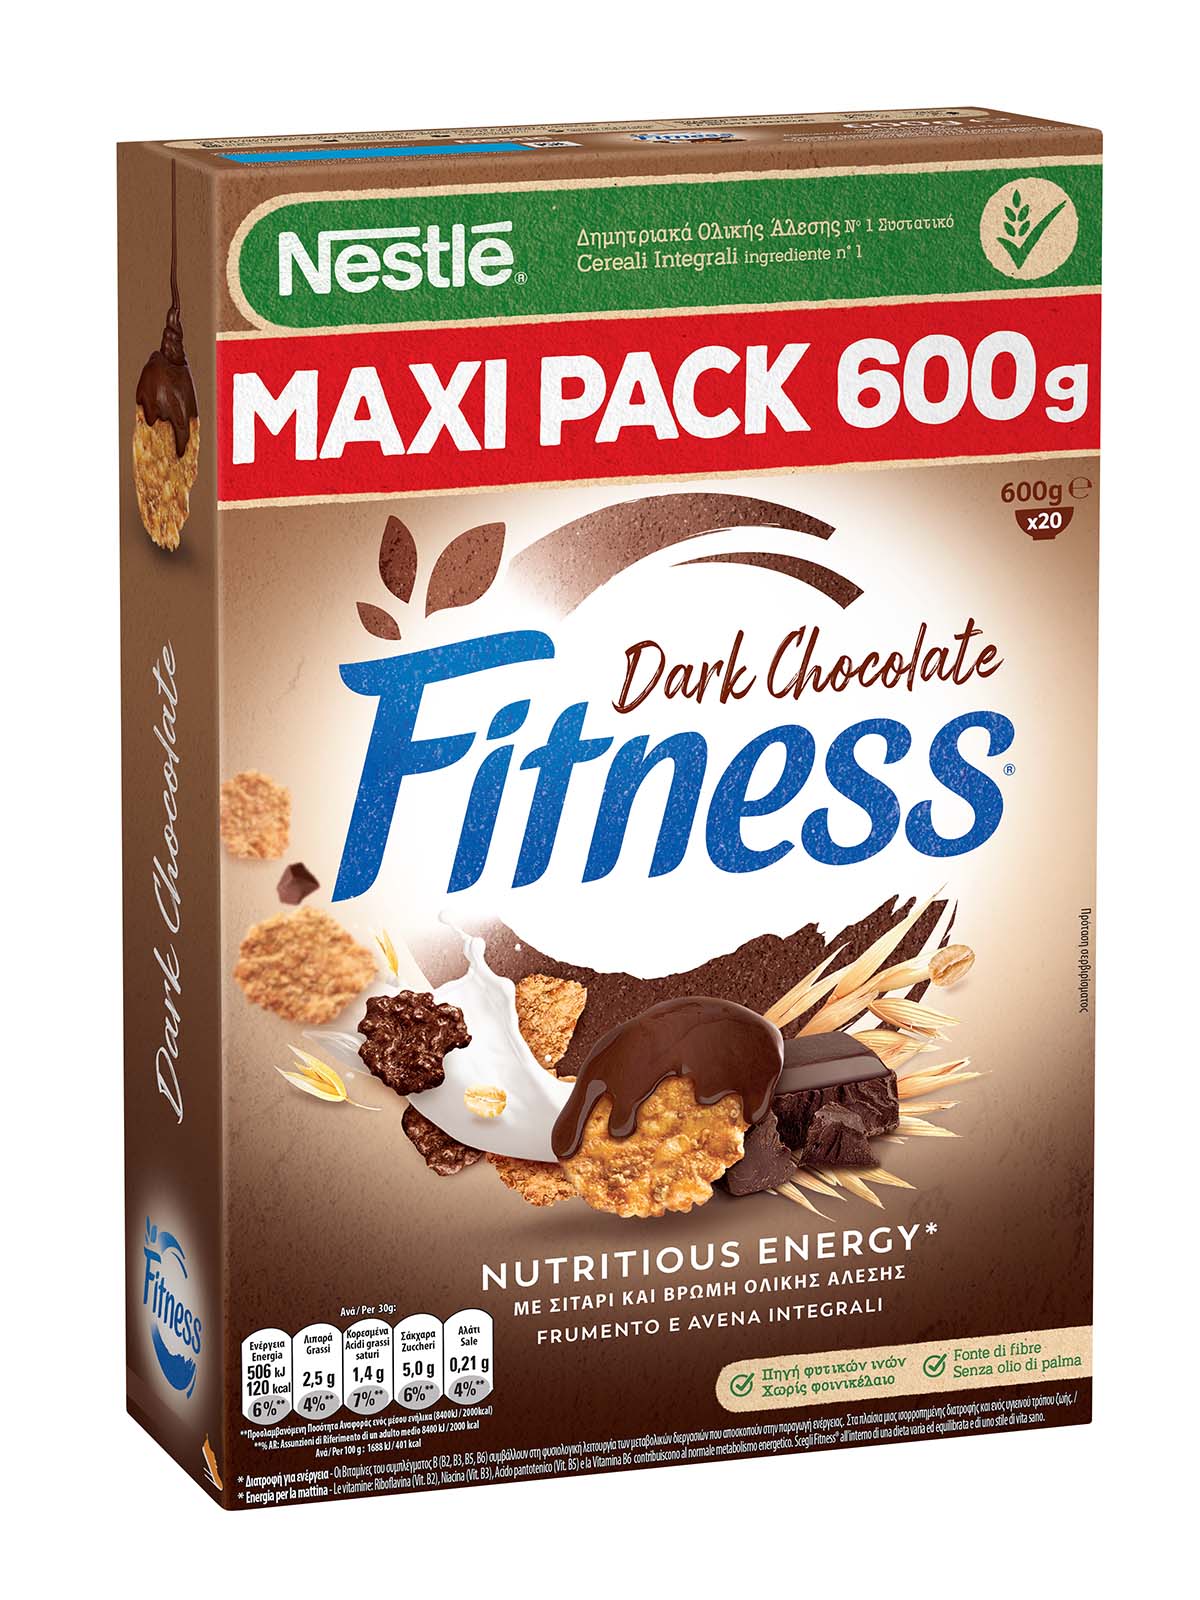 Fitness CIOCCOLATO FONDENTE Cereali con frumento e avena integrali e fiocchi ricoperti al cioccolato fondente 600g